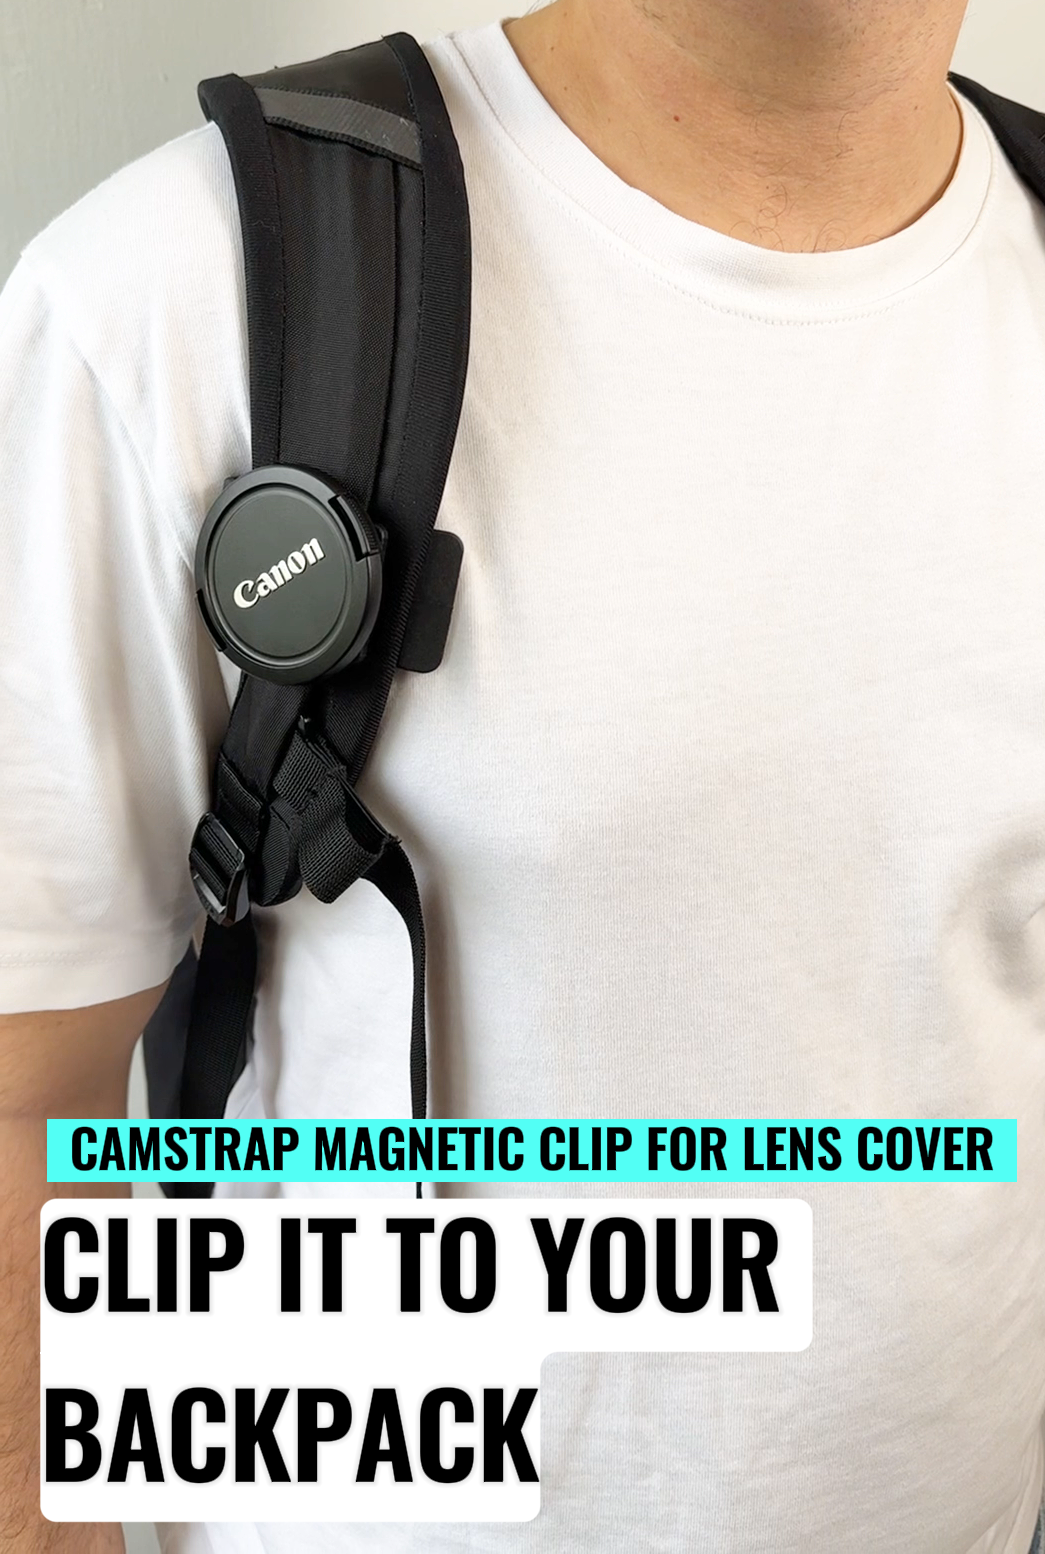 Clip magnético de camtrap para cubierta de lente